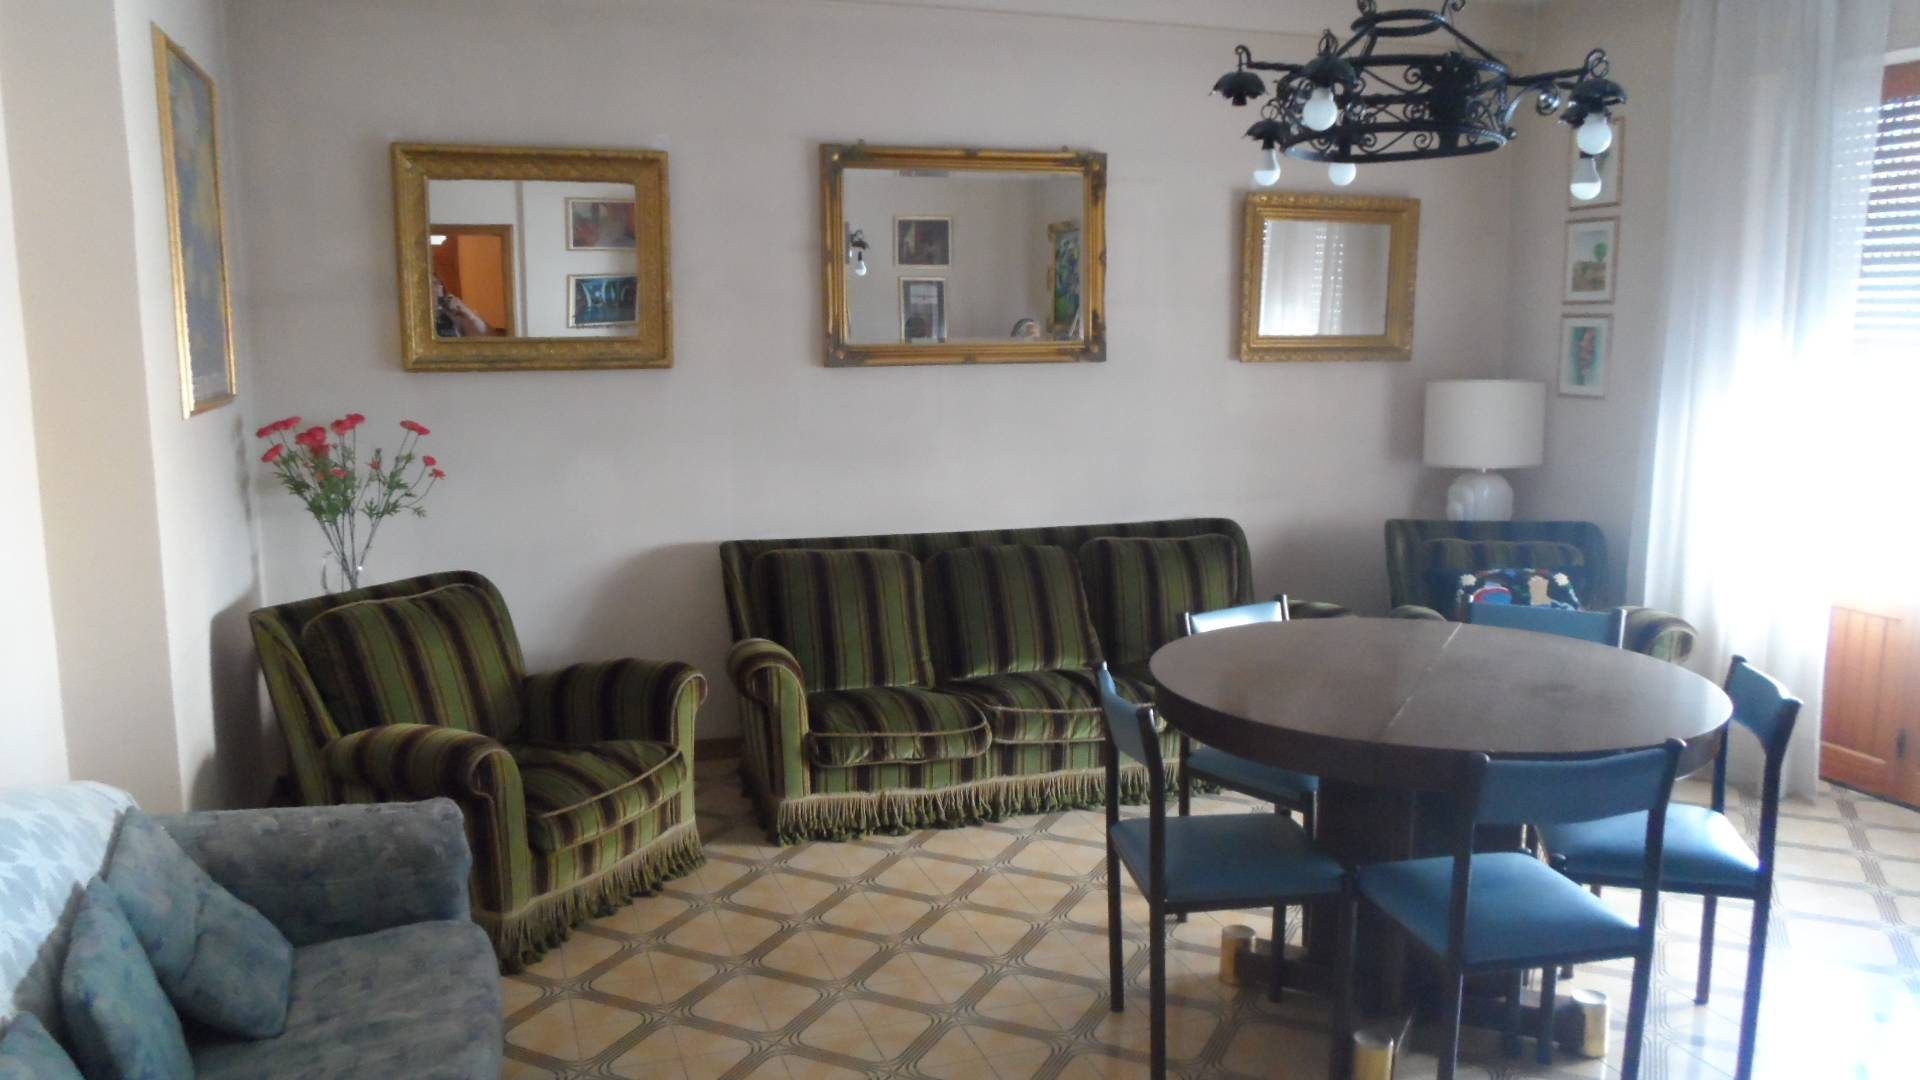 Appartamento arredato in affitto, San Benedetto del Tronto zona ascolani